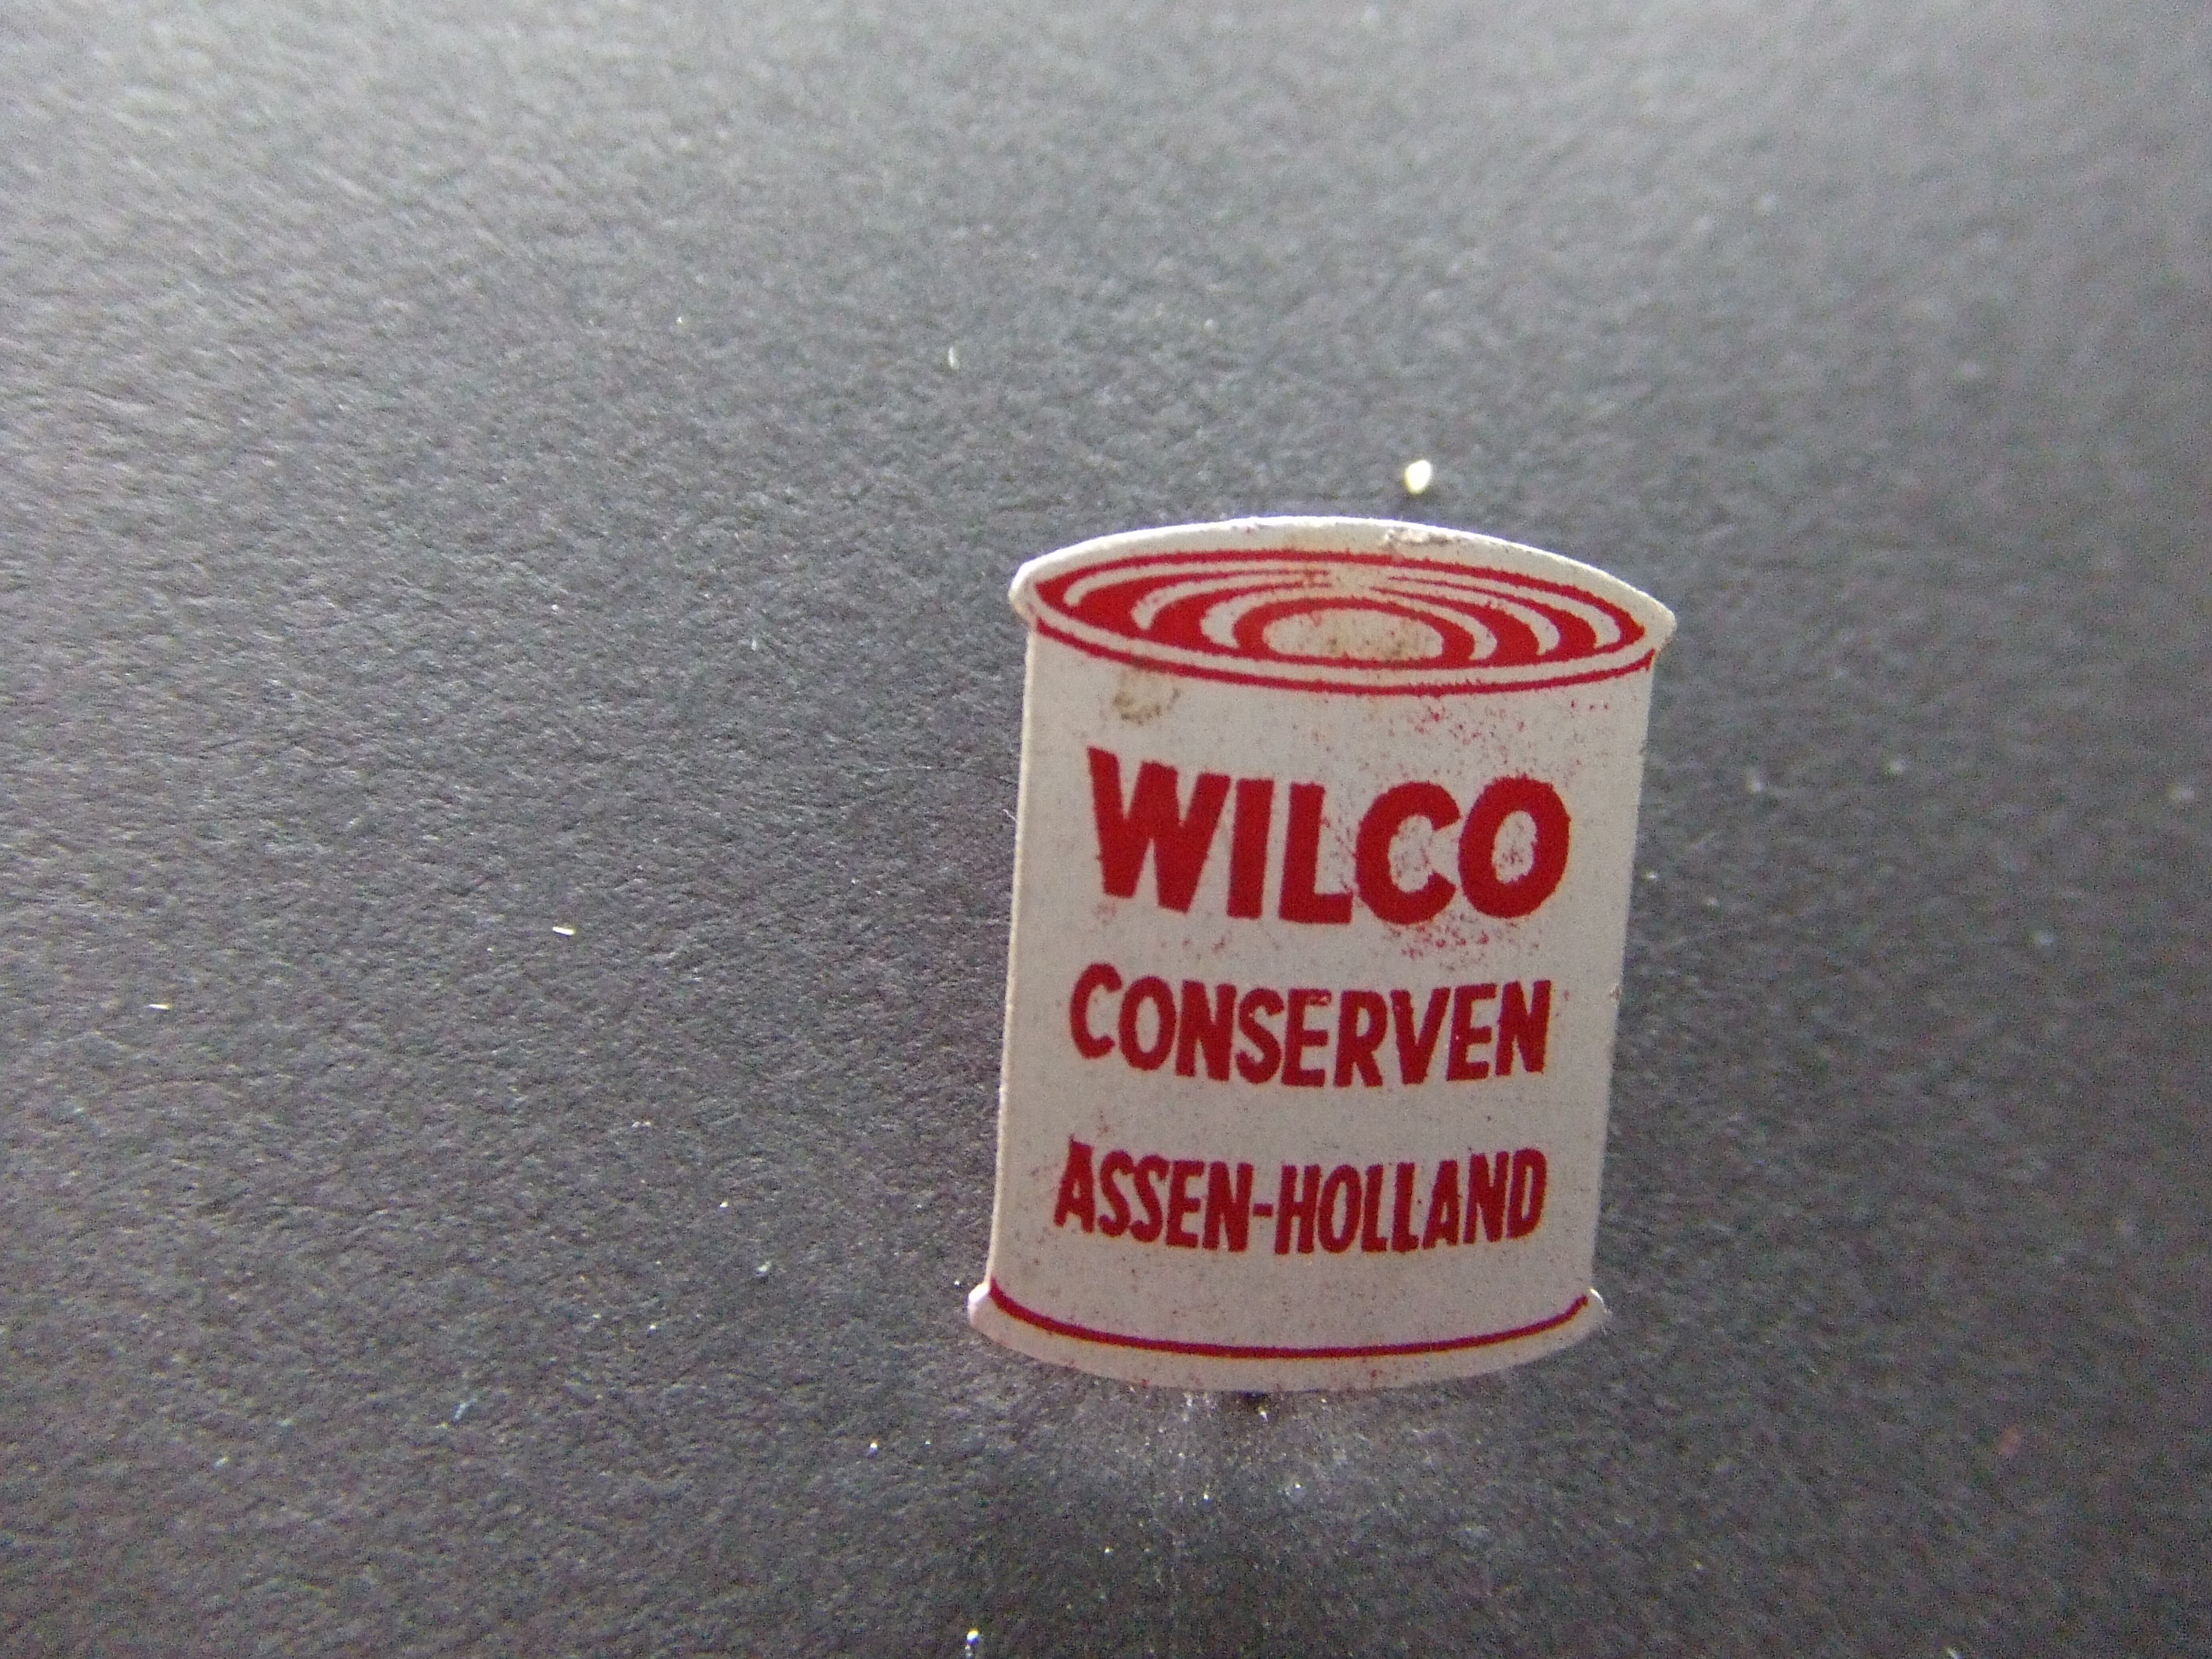 Wilco Conservenfabriek Assen